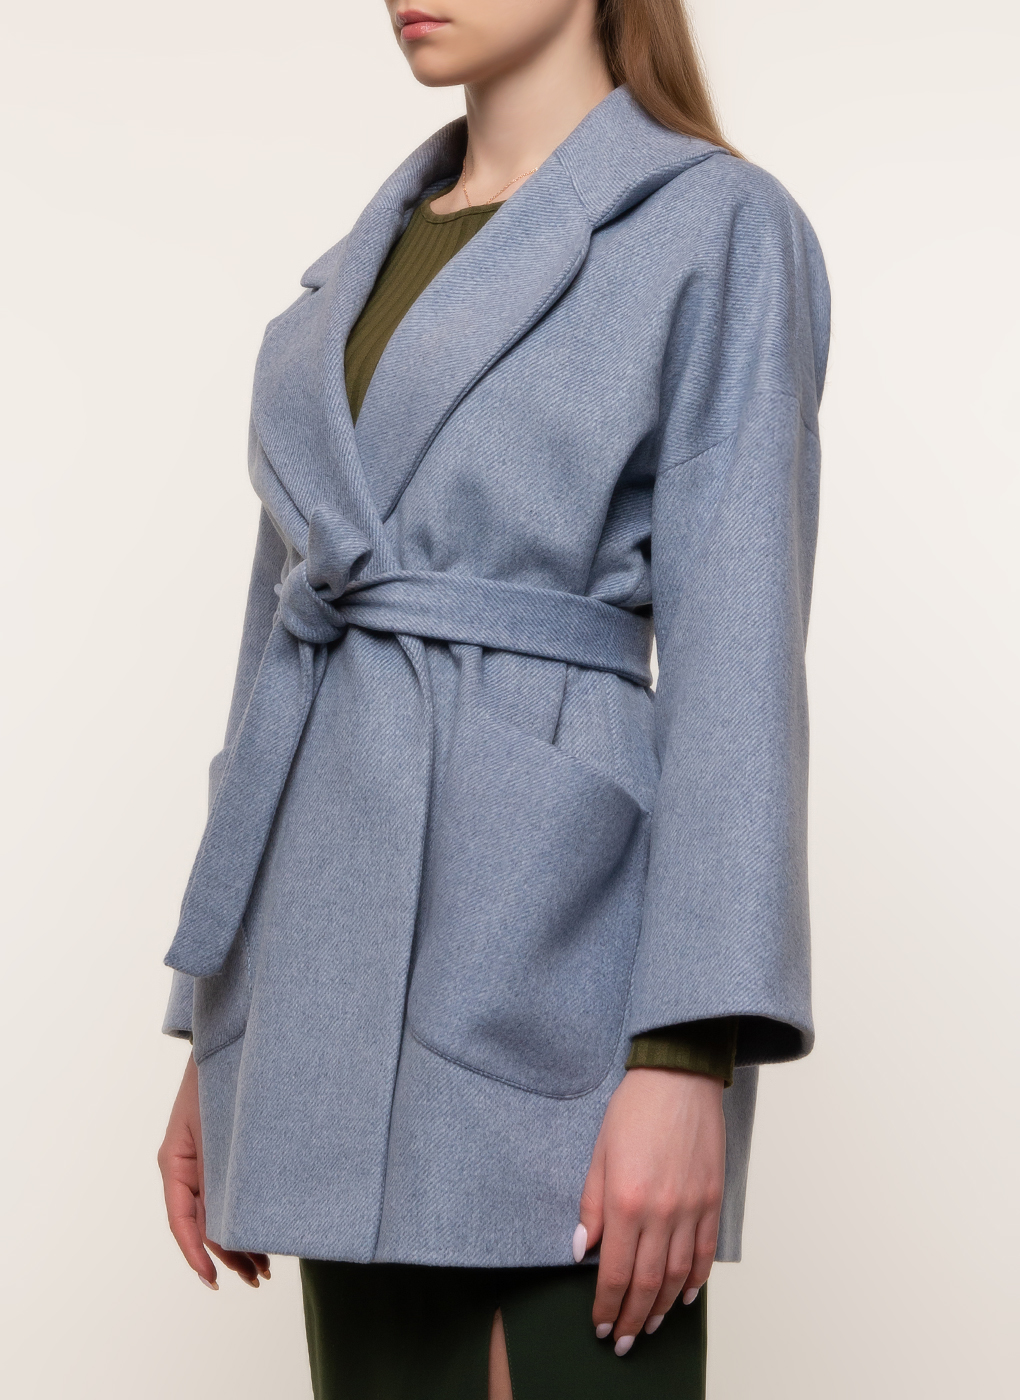 Пальто женское Каляев 45016 голубое 44-46 RU